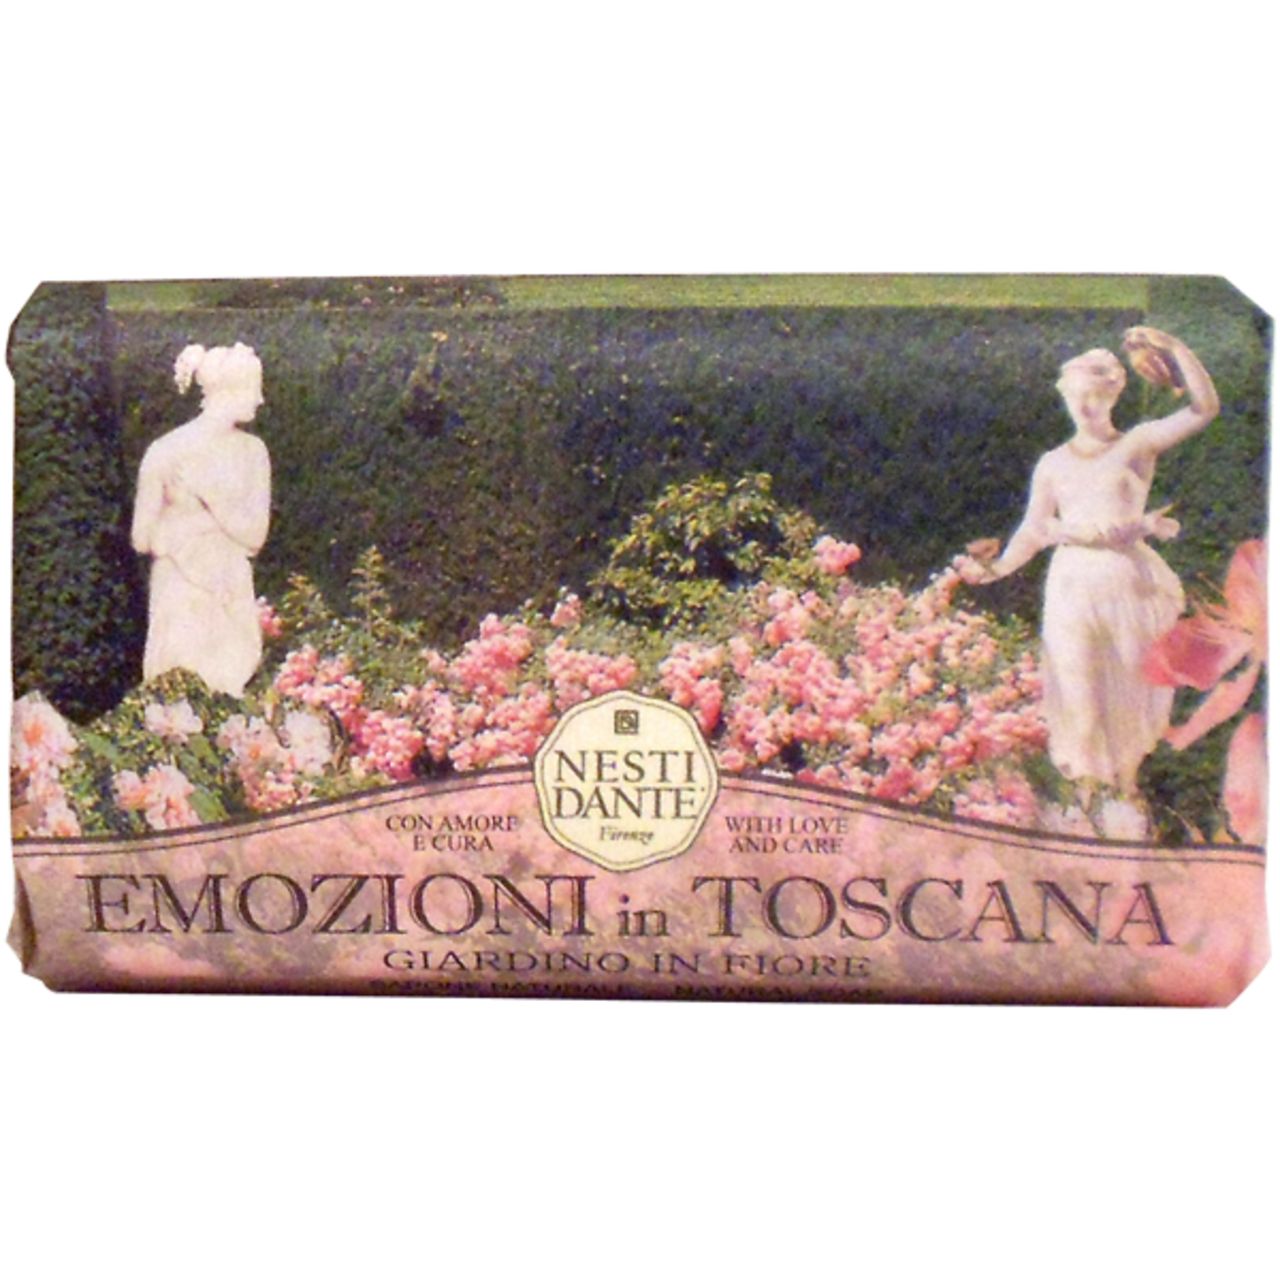 Nesti Dante Firenze, Emozione in Toscana Giardino in Fiore Soap